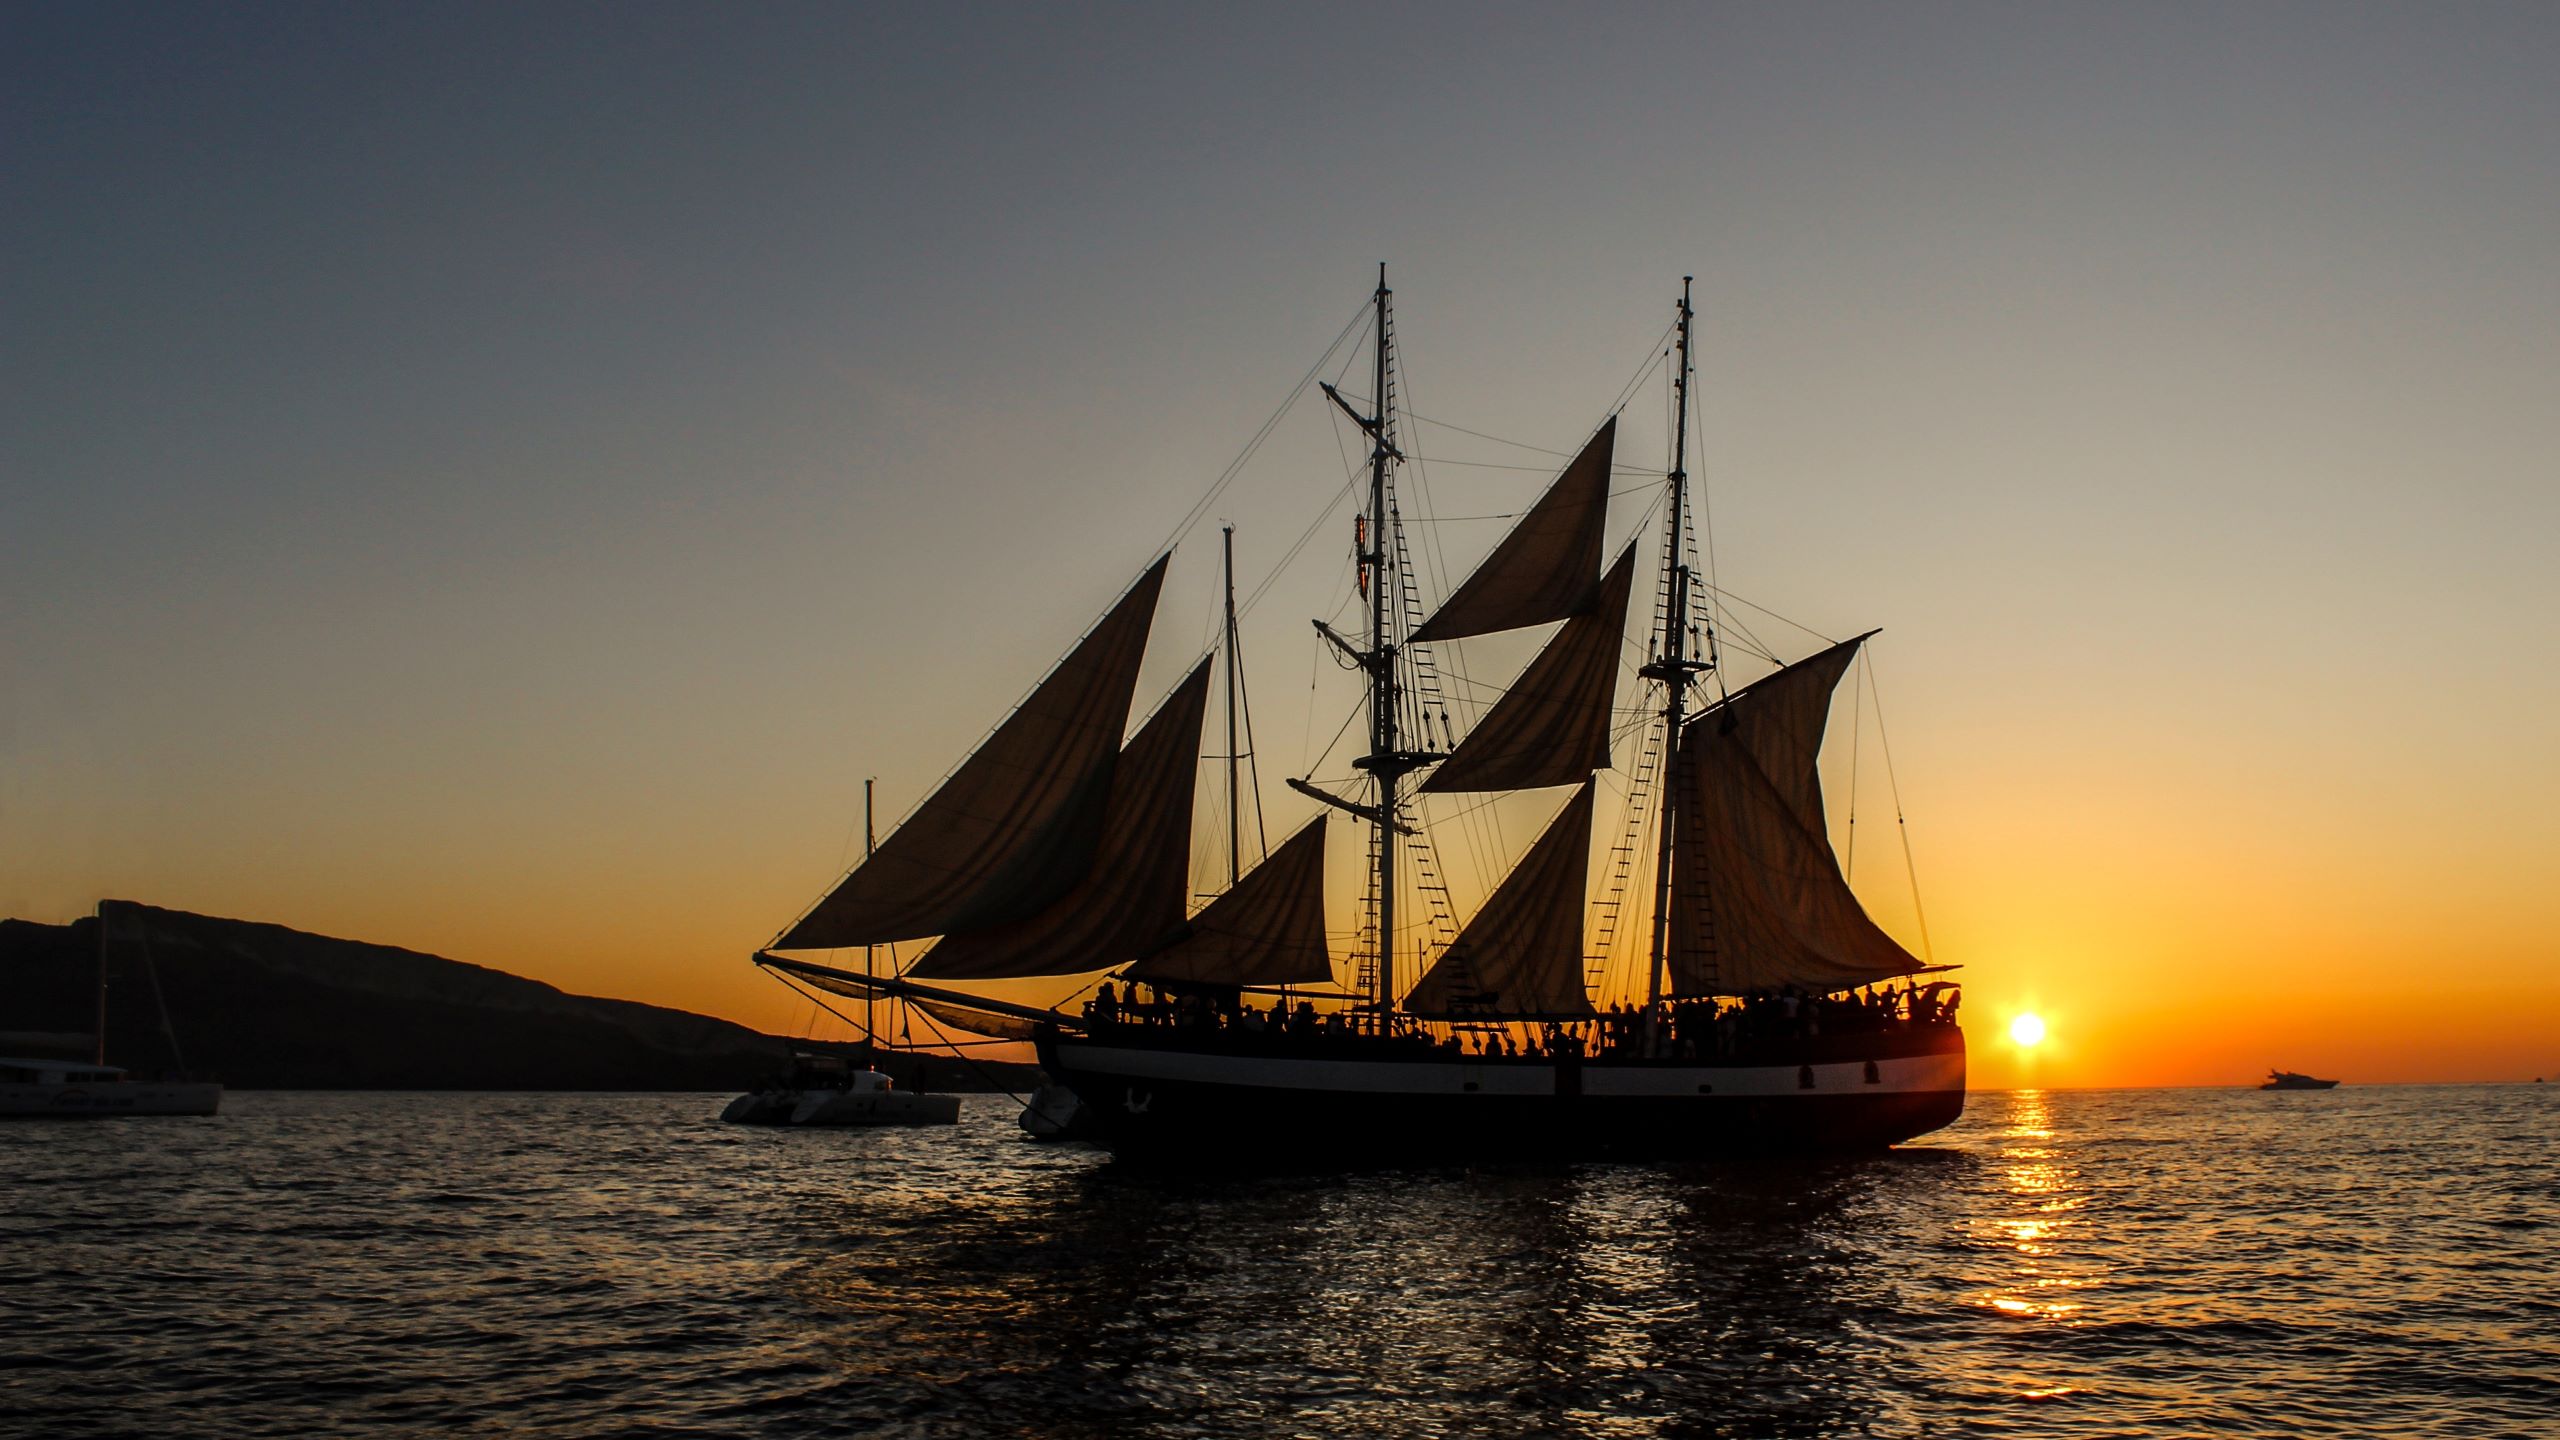 Bild zeigt Segelschiff auf Meer mit Sonnenuntergang